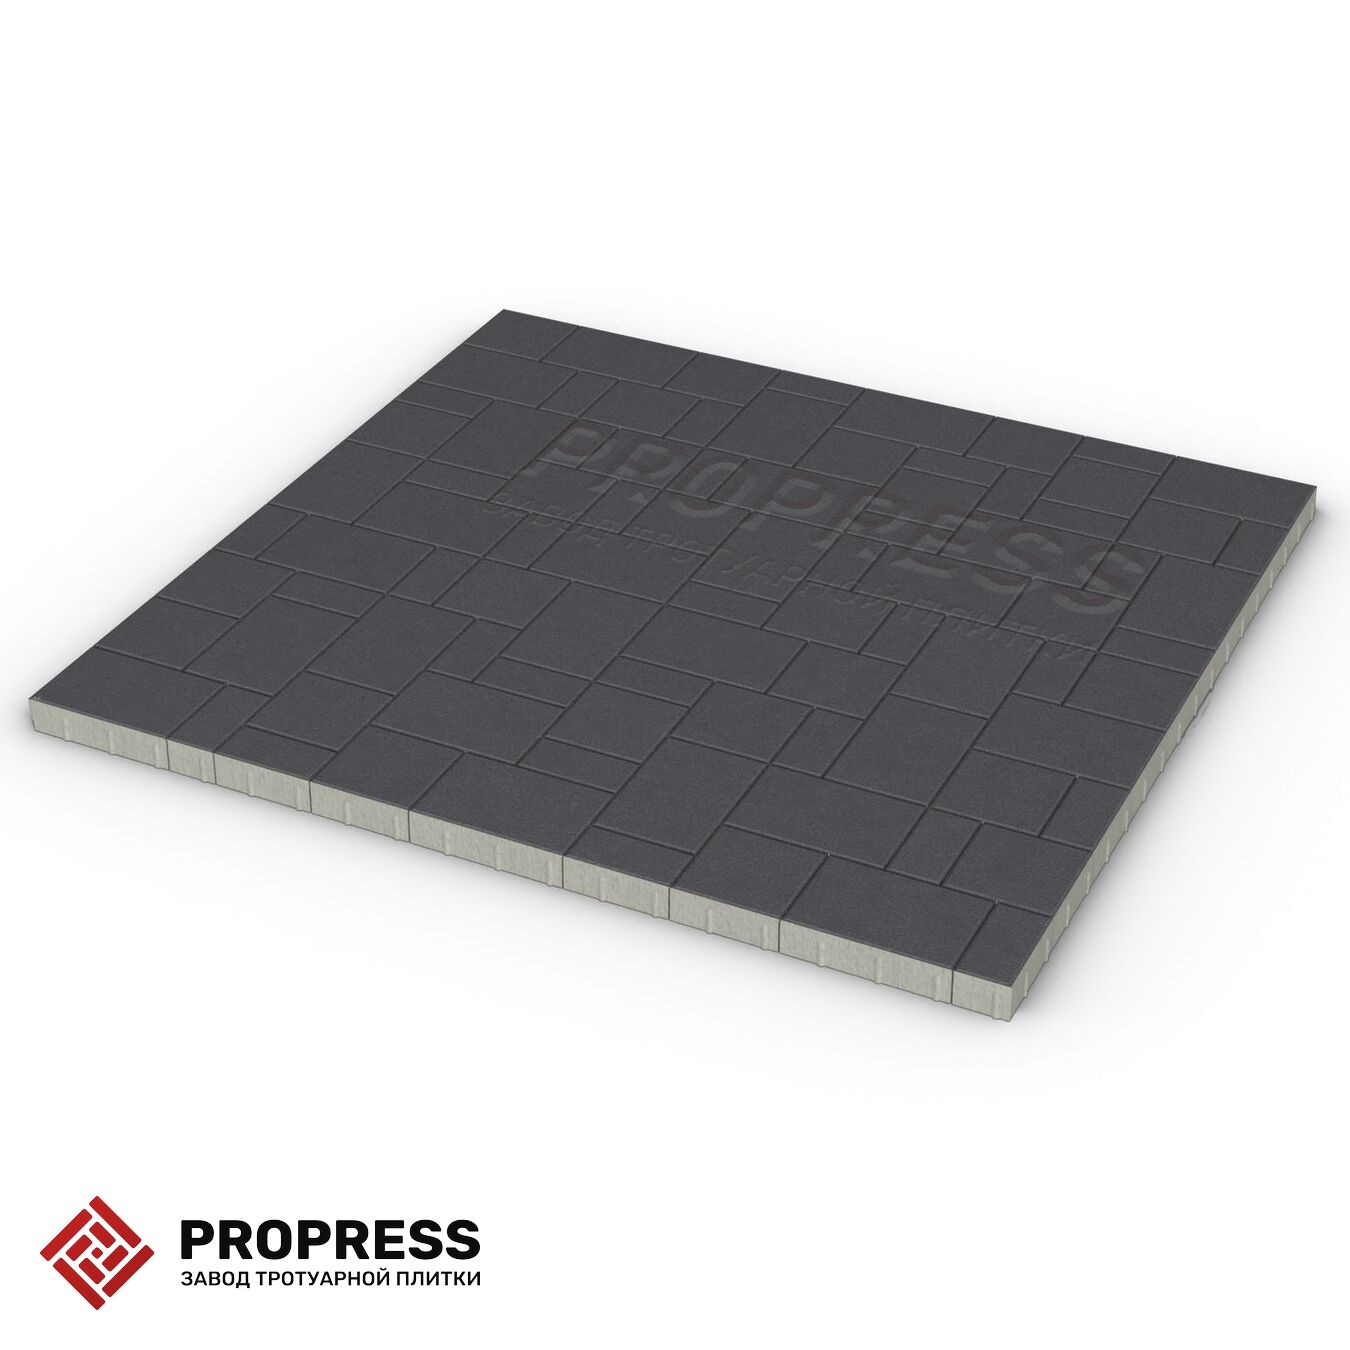 Тротуарная плитка Пропресс Лэндхаус Чёрный зернистый 60 мм